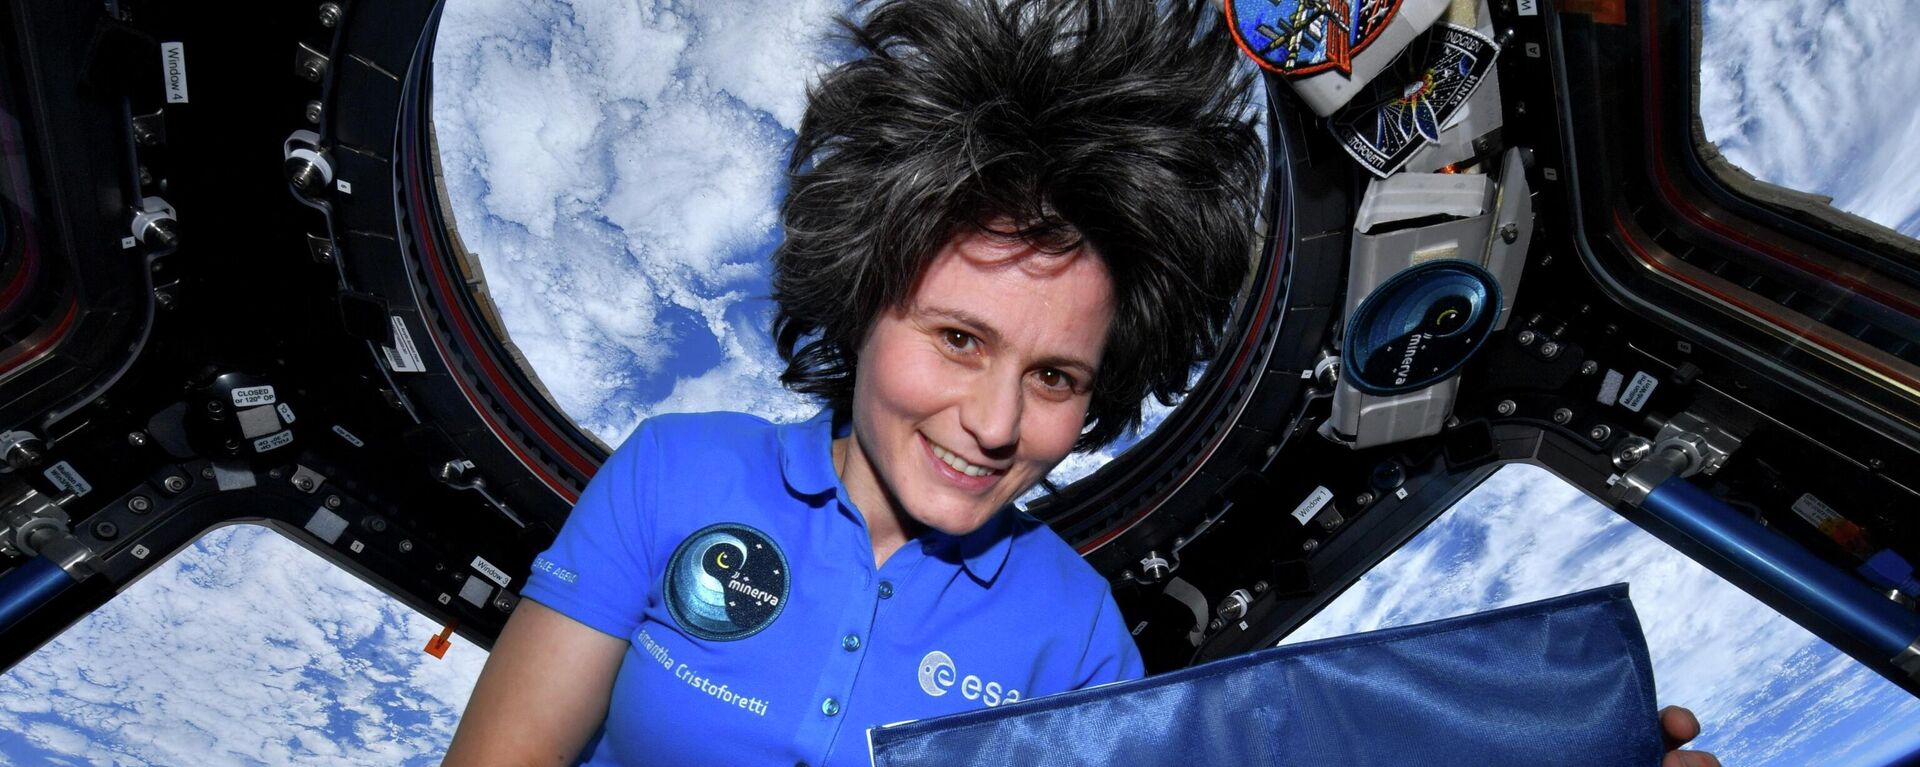 İtalyan astronot Samantha Cristoforetti, Uluslararası Uzay İstasyonu'na (ISS) komuta eden Avrupalı ilk kadın oldu. - Sputnik Türkiye, 1920, 29.09.2022